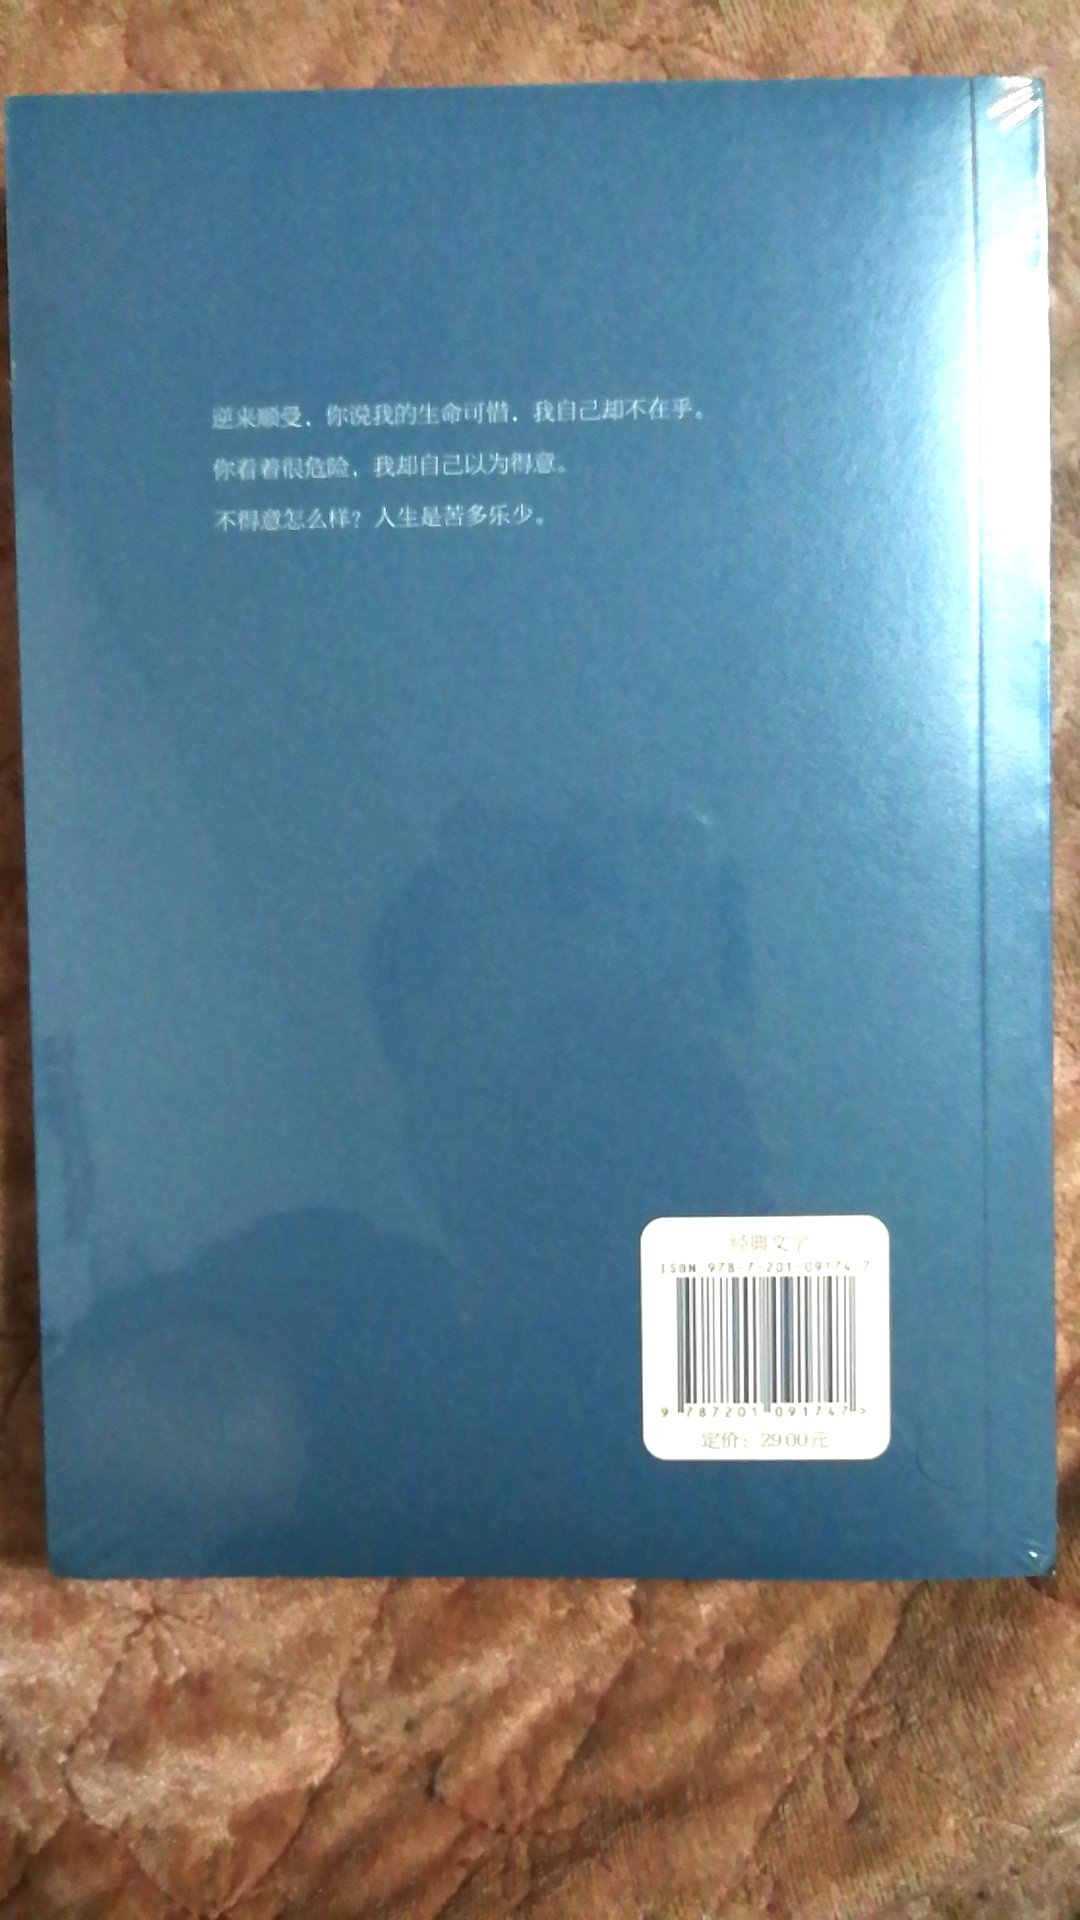 萧红是中国现代文学史上的重要女作家，她很有才情，可惜命运坎坷。夏志清对她评价极高。当前市场上版本众多，先买这本看看。